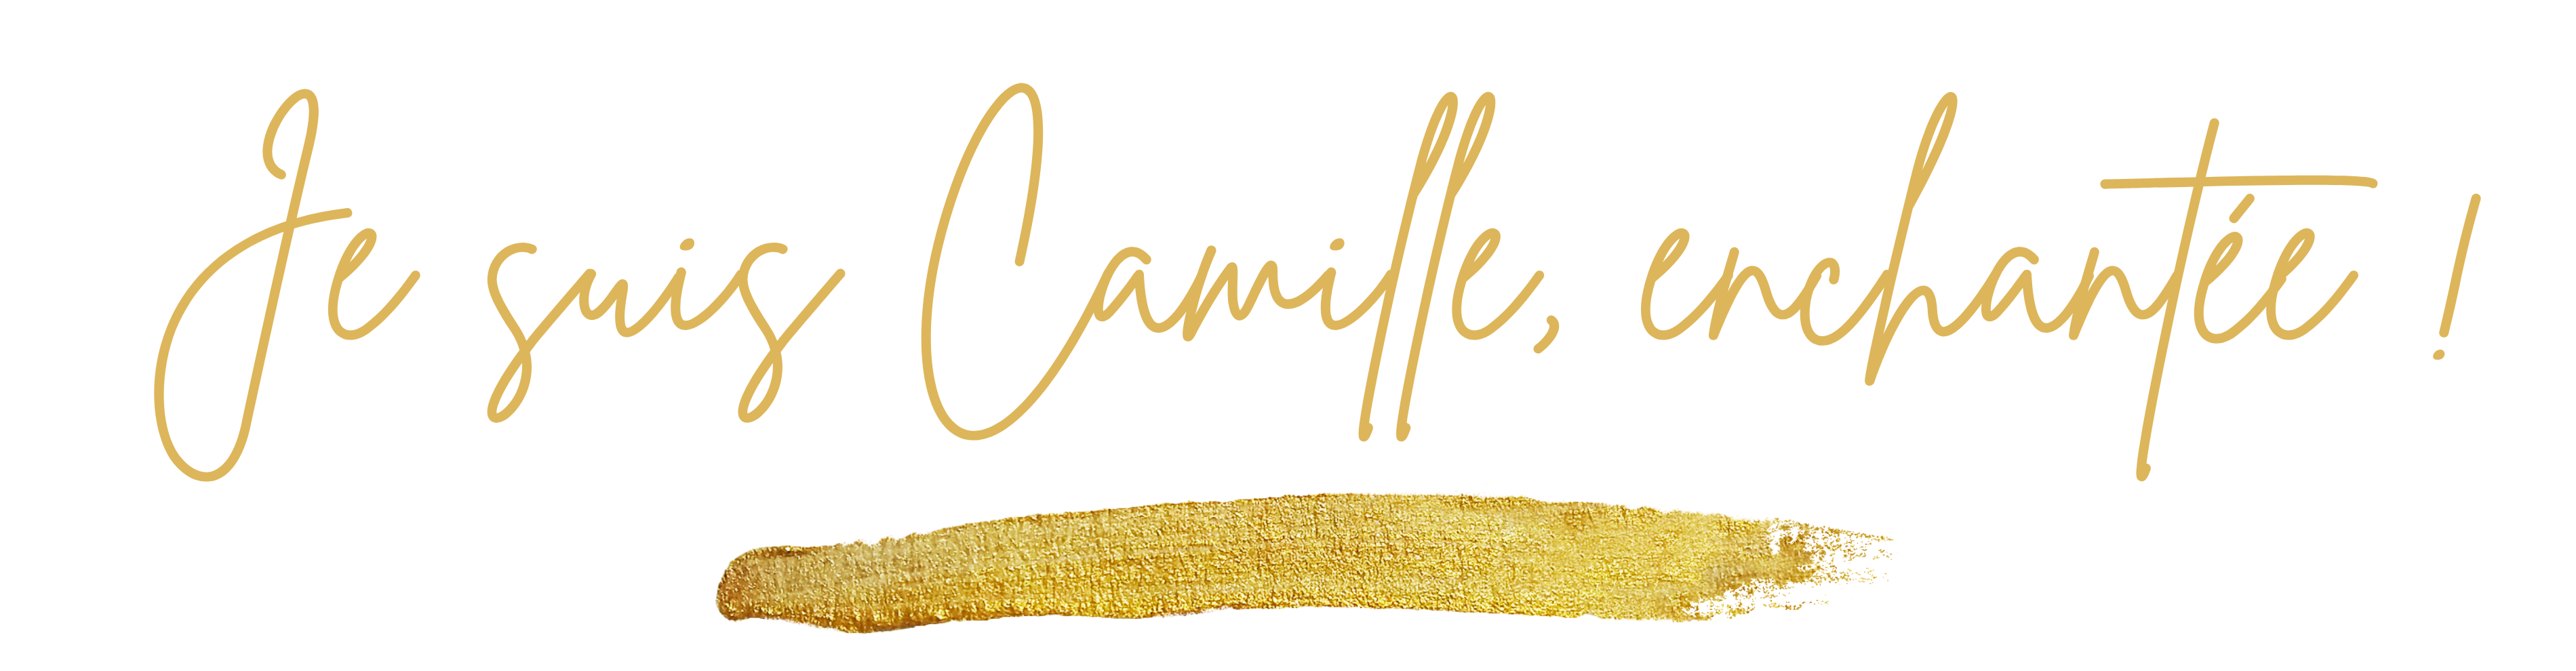 Je suis Camille, enchantée !